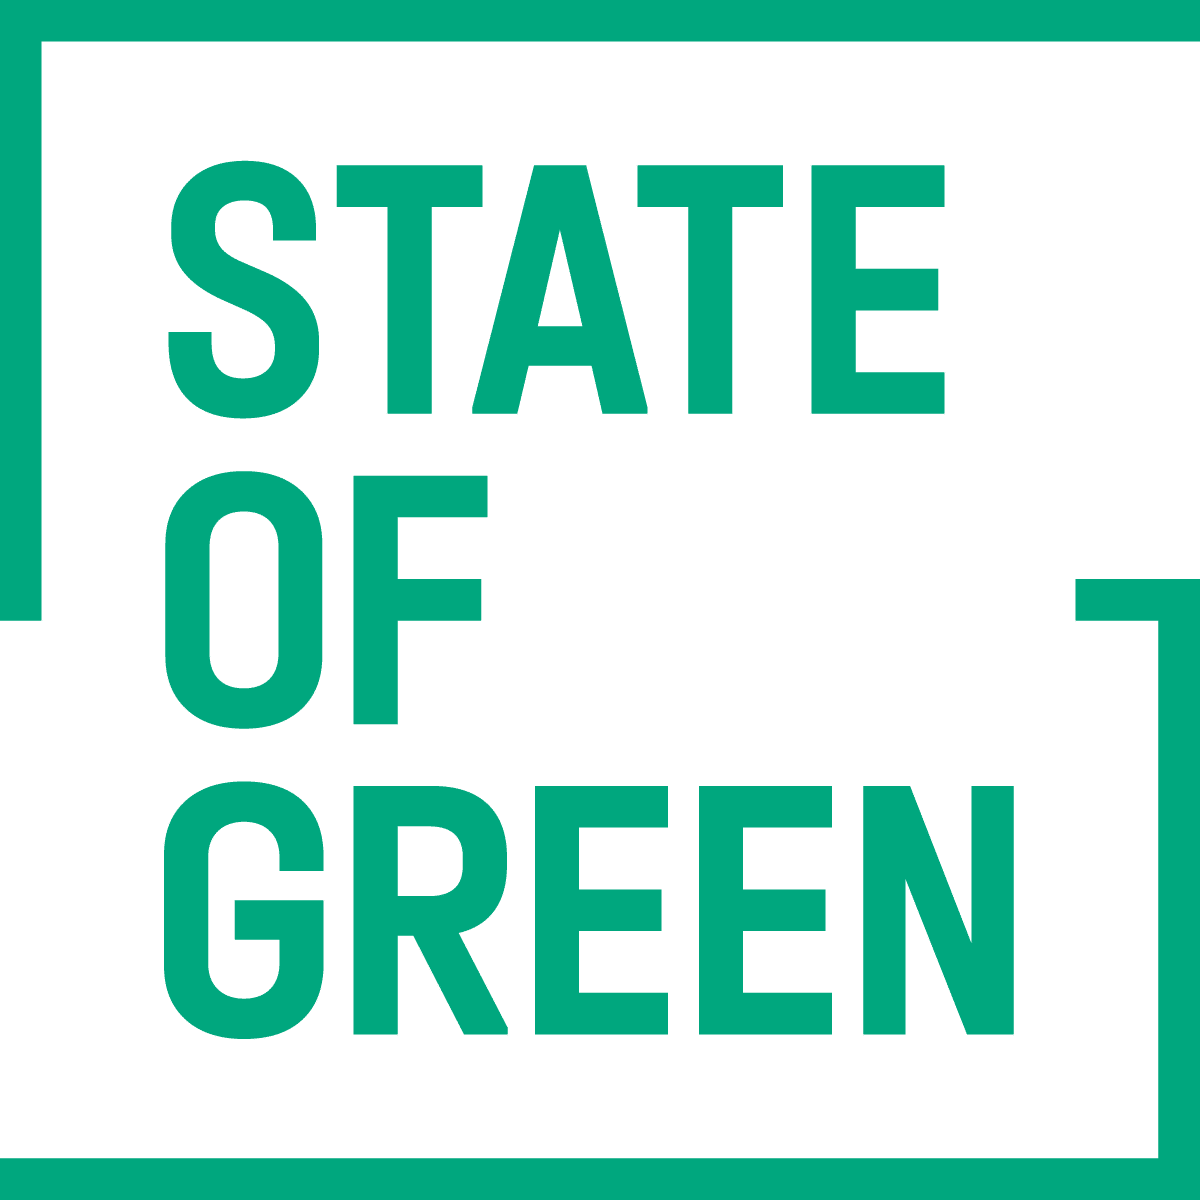 Platform der fremmer danske grønne initiativer i hele verden